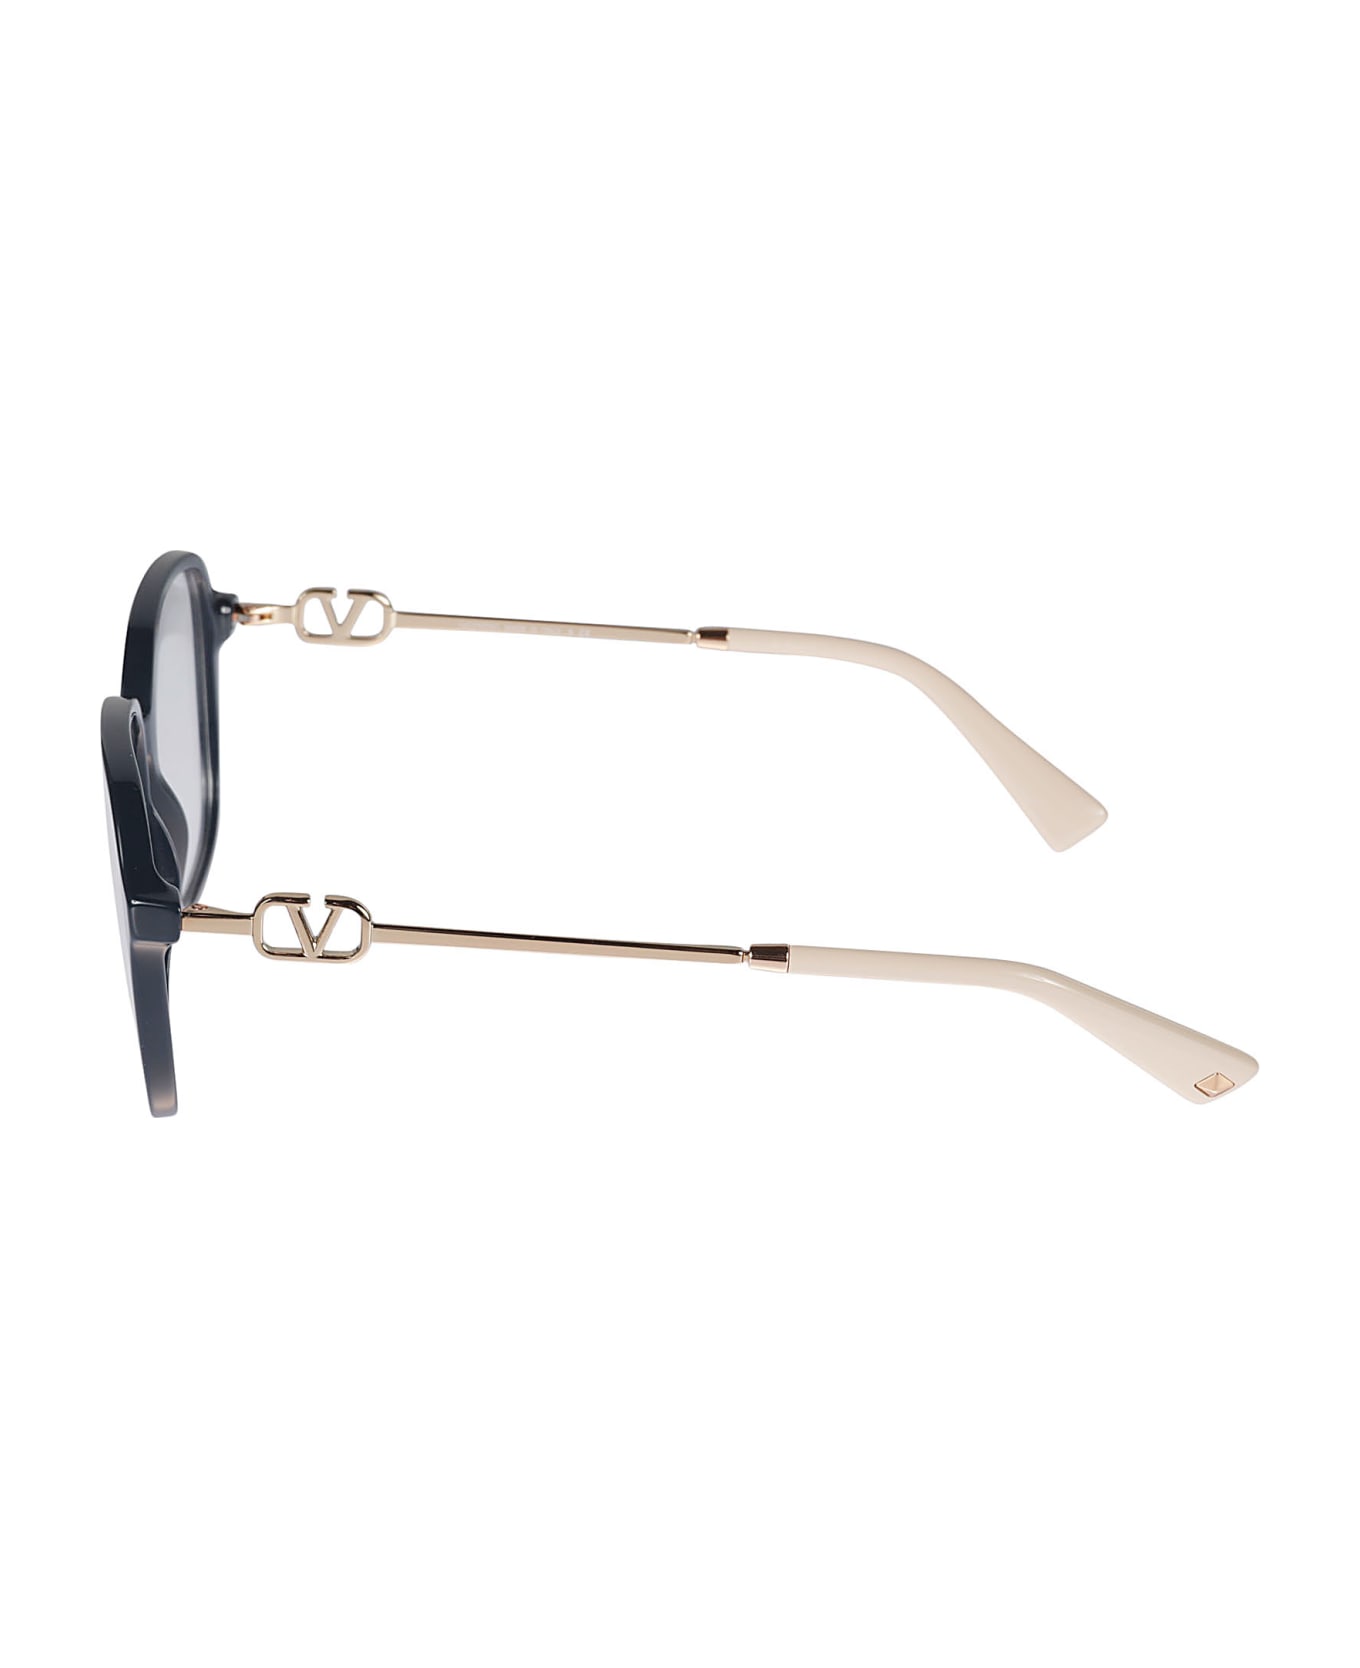 Valentino Eyewear Vista5034 Glasses - 5034